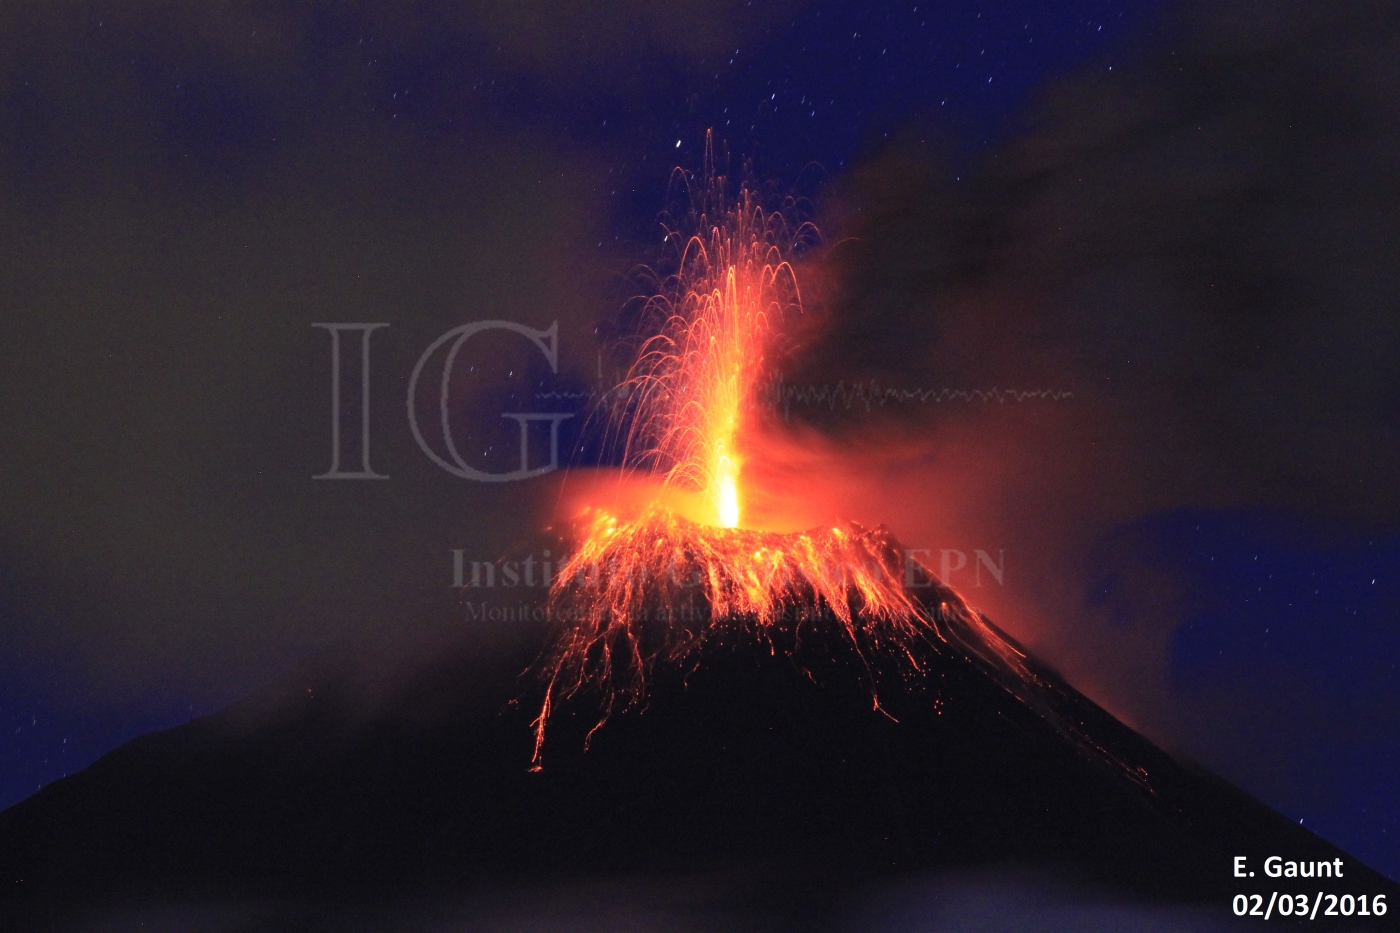 Monitoreo de la actividad superficial del volcán Tungurahua